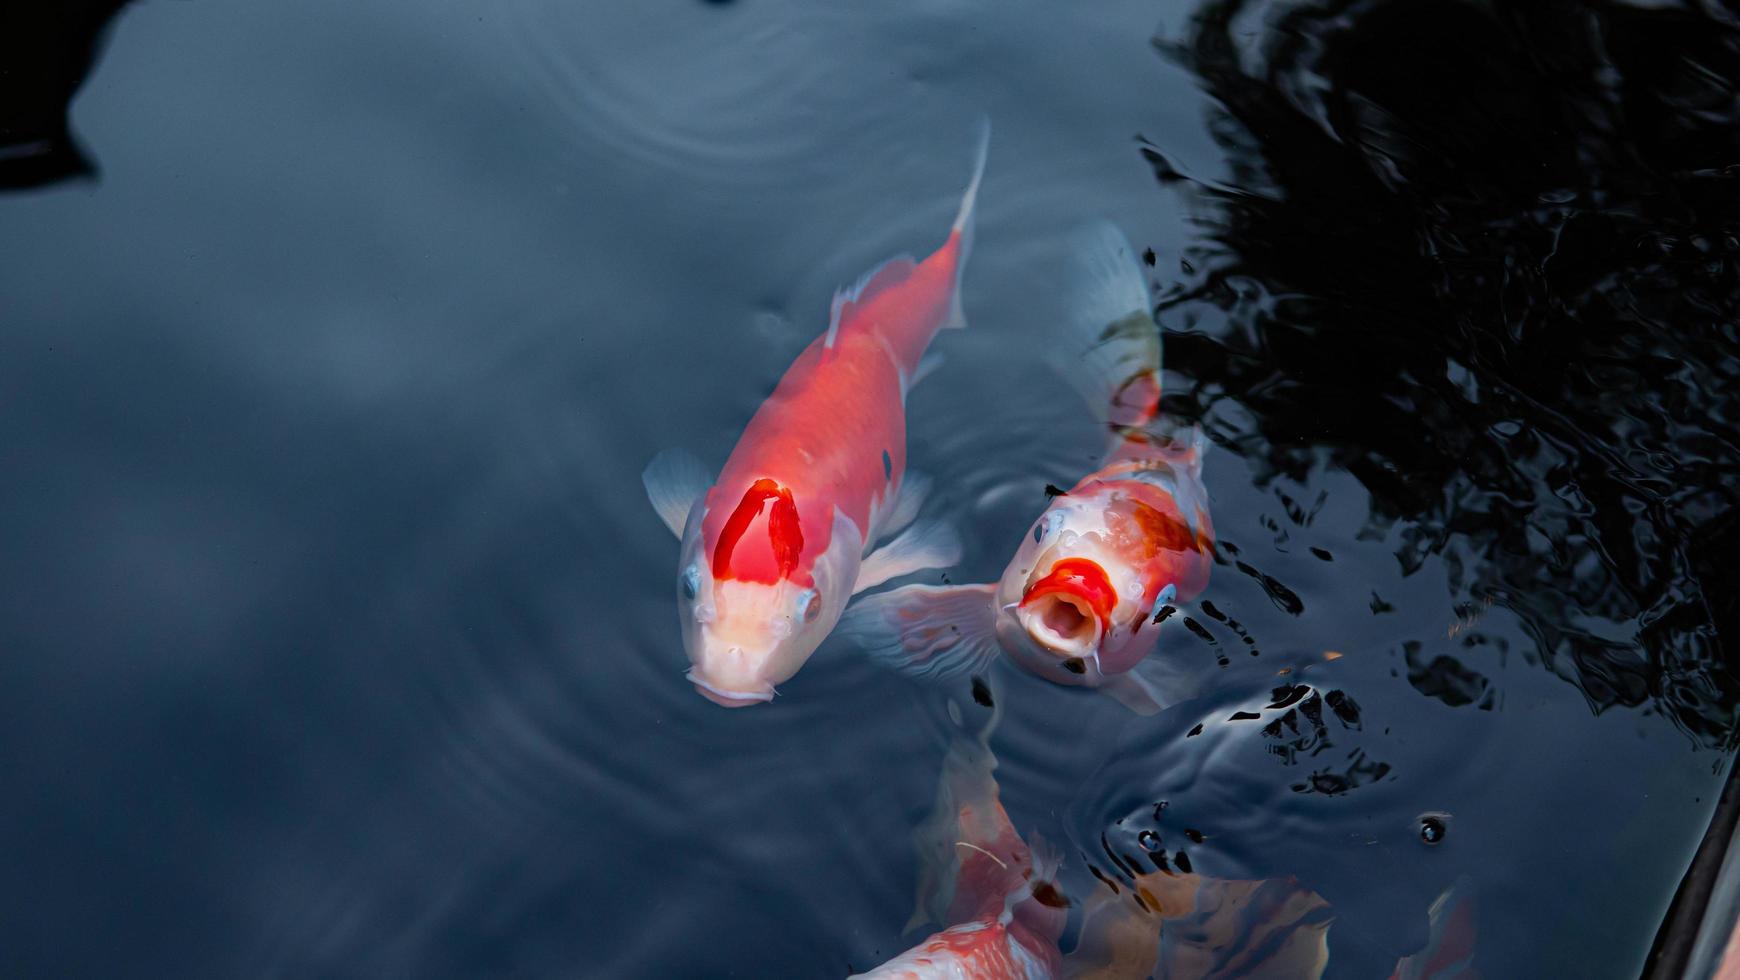 peces koi de lujo o carpas de lujo nadando en un estanque de peces de estanque negro. mascotas populares para la relajación y el significado del feng shui. foto